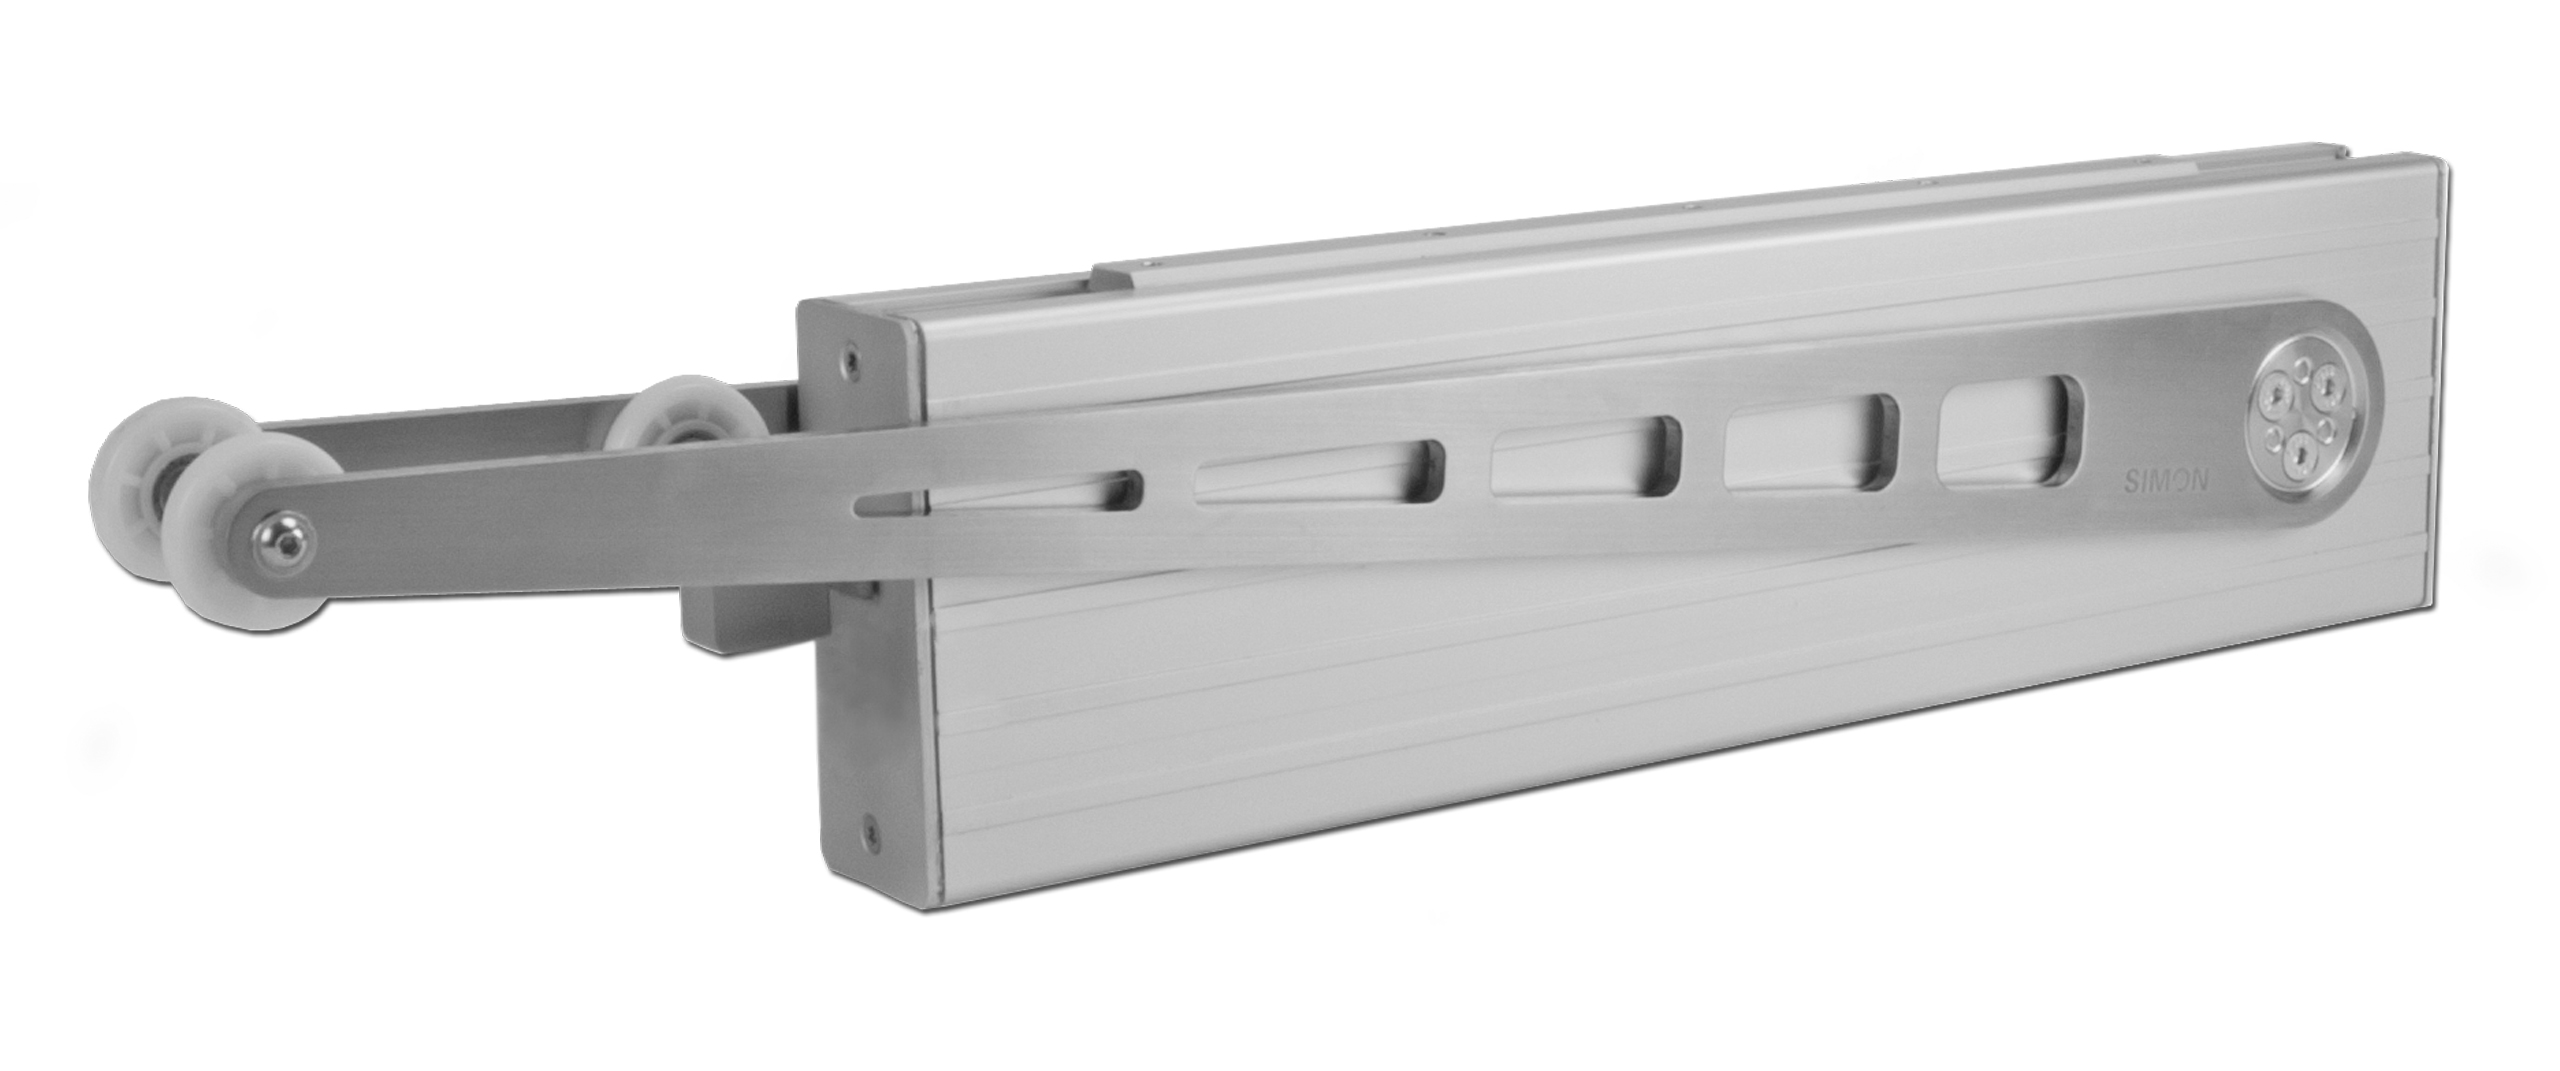 PA-KL²-T-80 Folding Arm² door opener